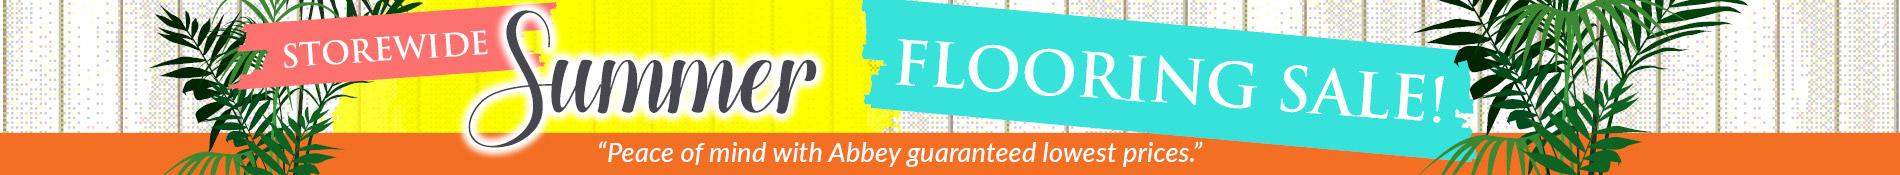 Storewide Summer Flooring Sale